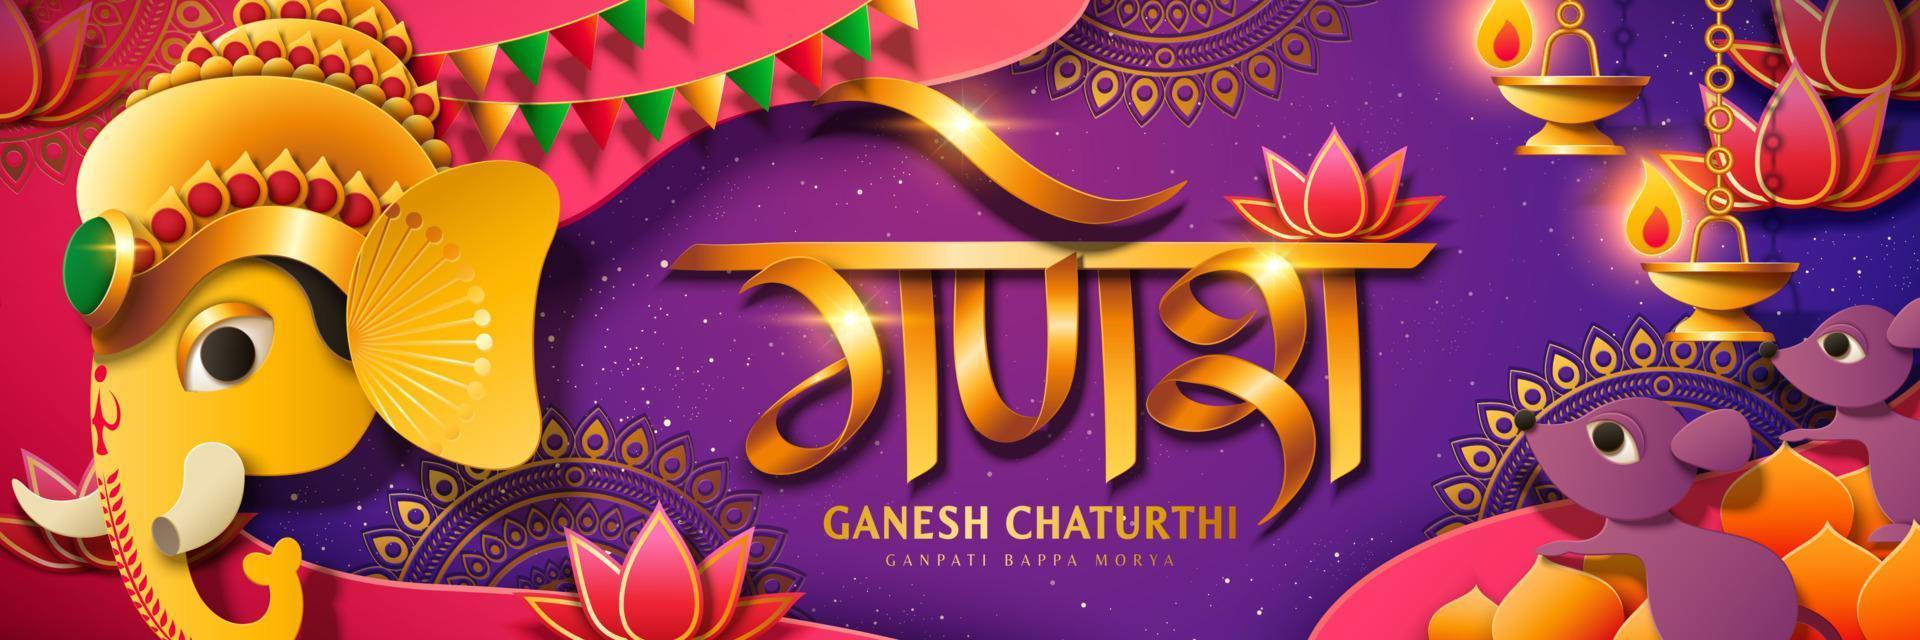 banner del festival ganesh chaturthi con cabeza de dios hindú ganesha de color dorado, ganesha escrito en hindi sobre fondo morado vector